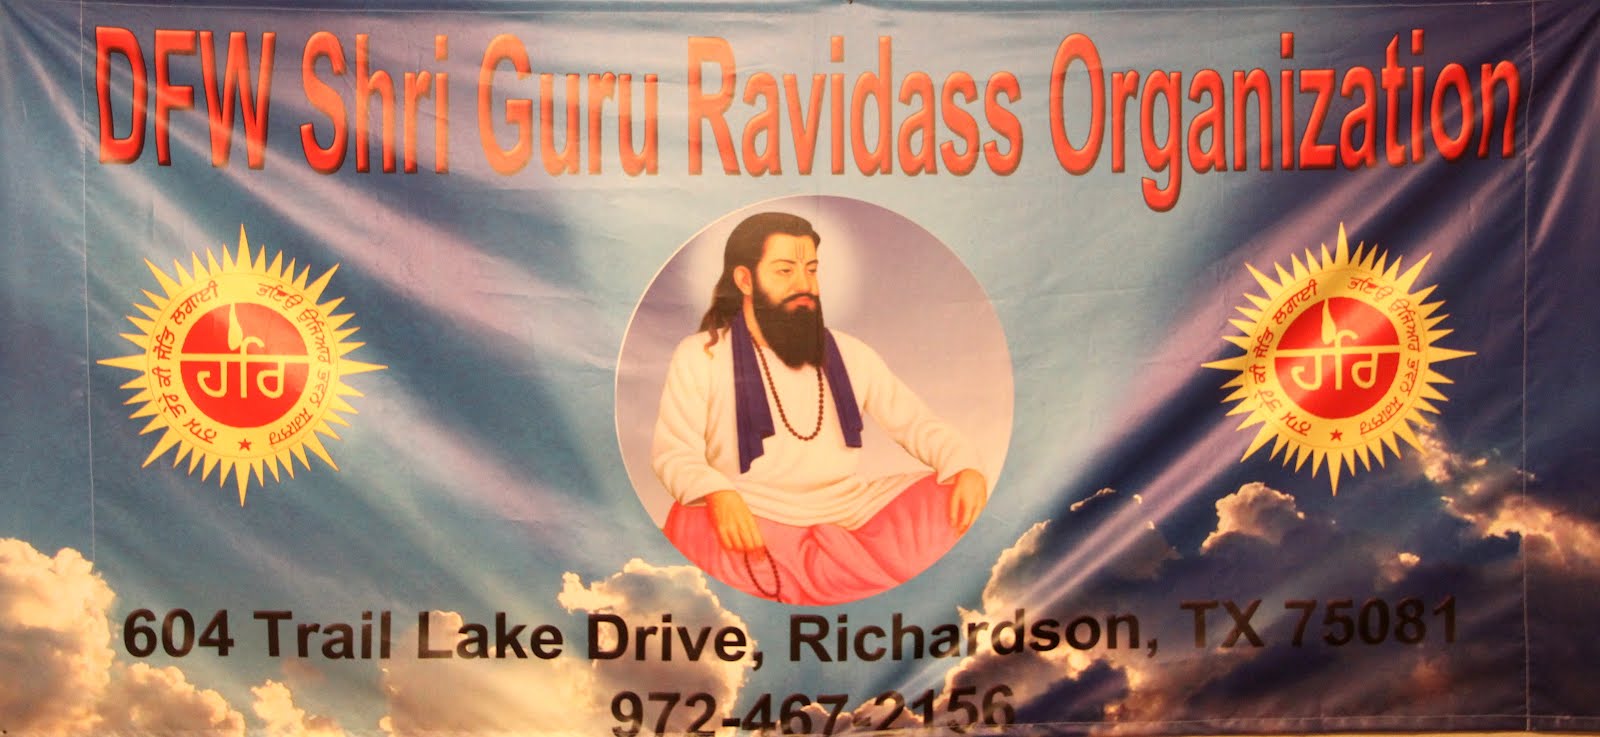 DFW Shri Guru Ravidass Organization